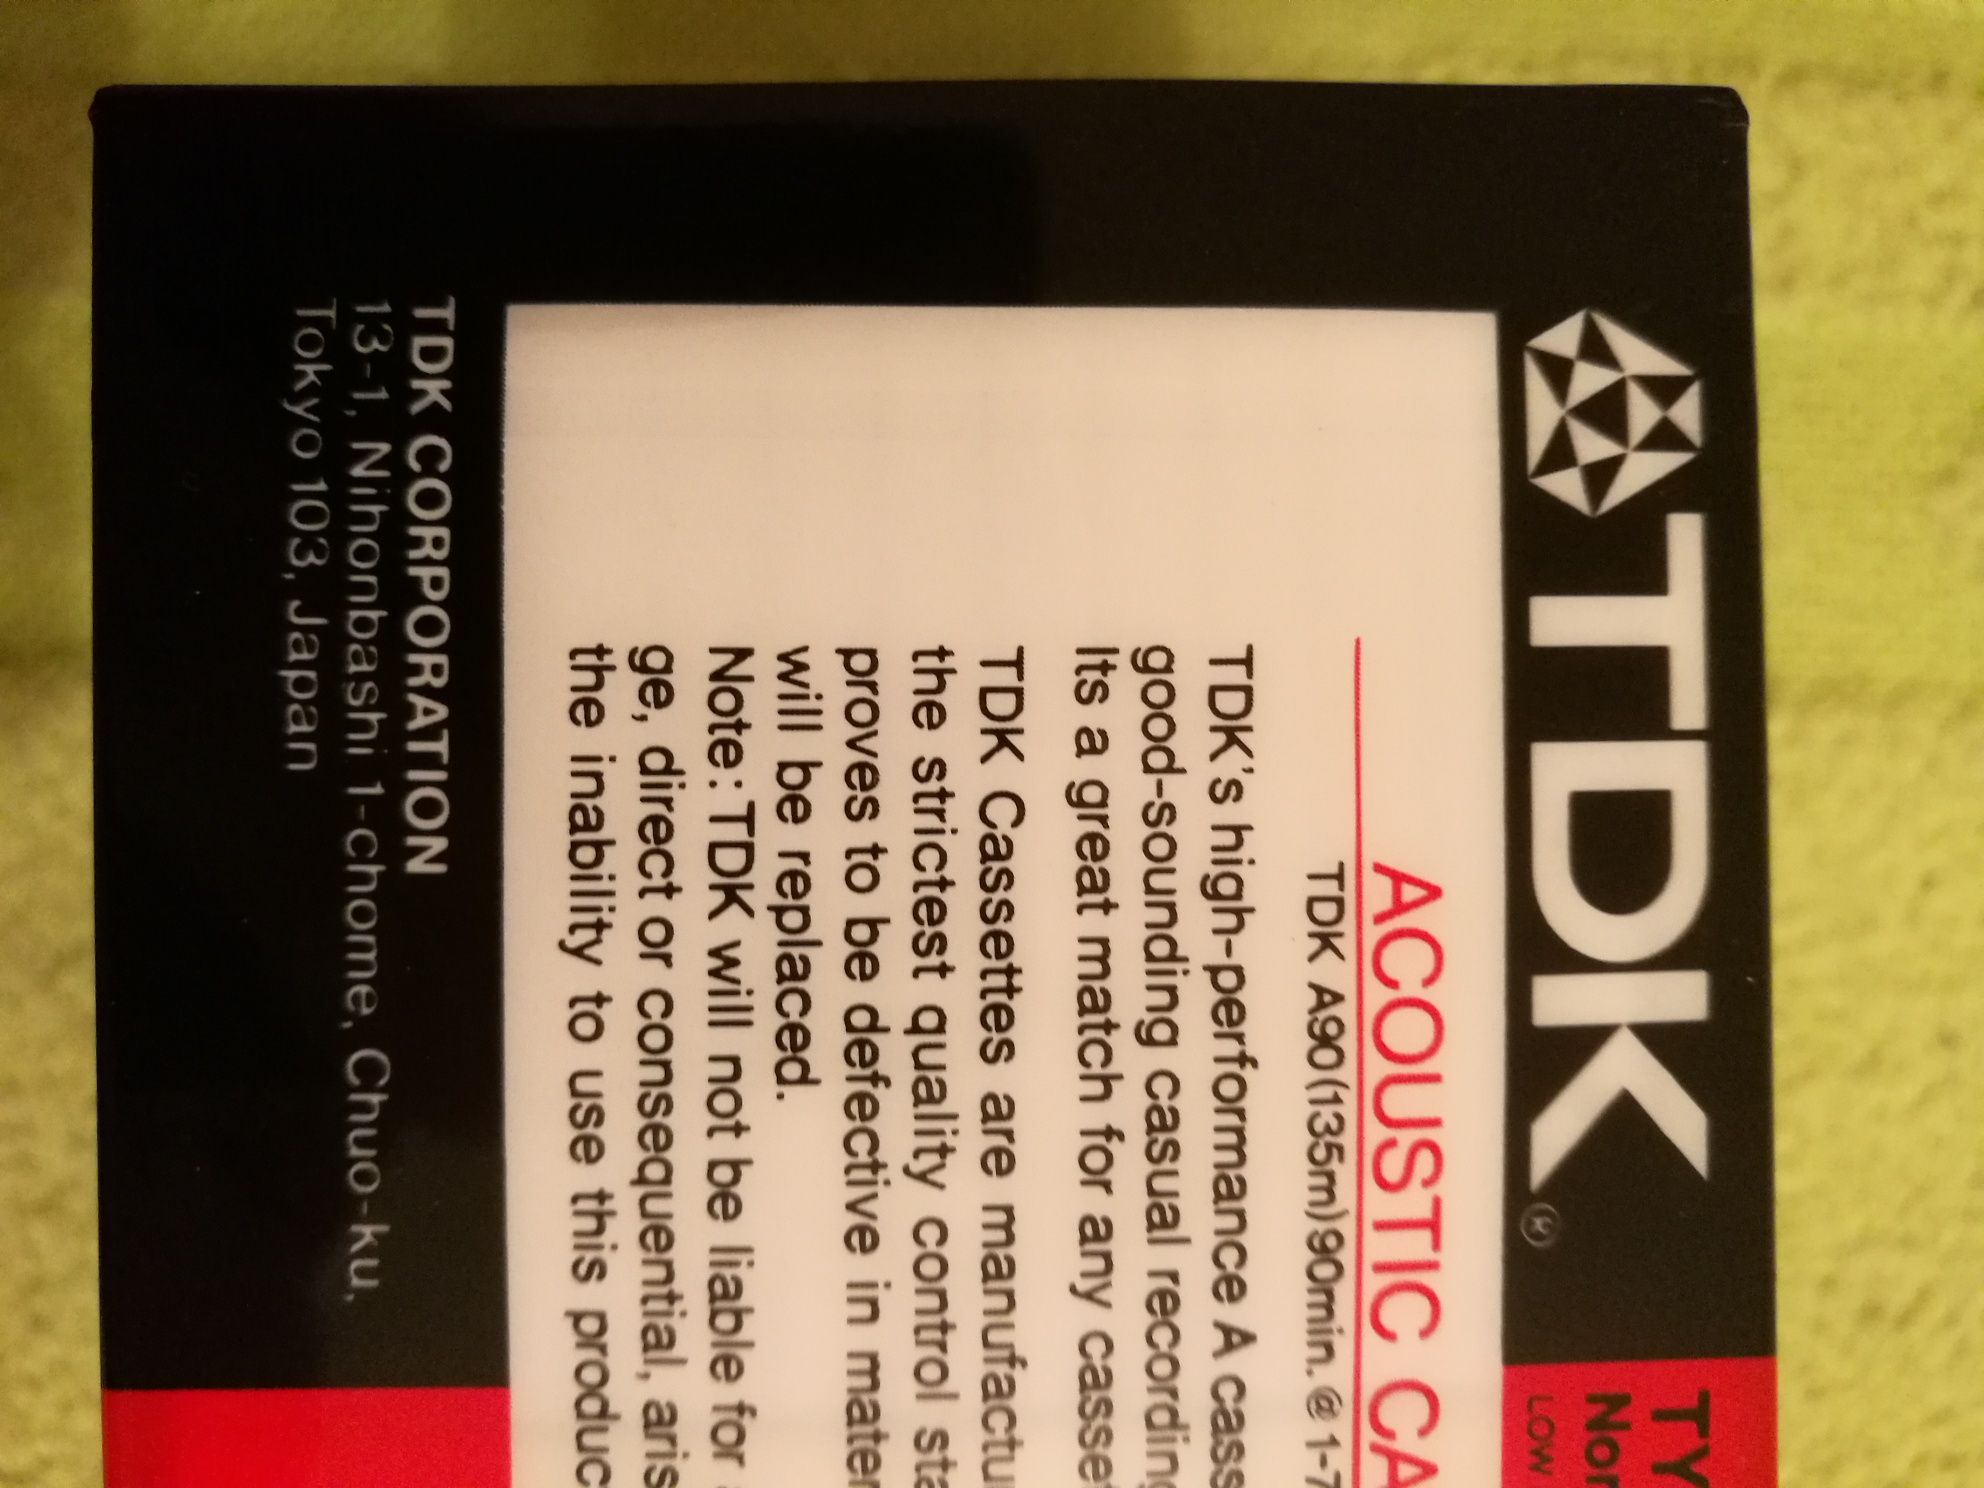 Новые запечатанные аудио кассеты TDK, made in Japan.